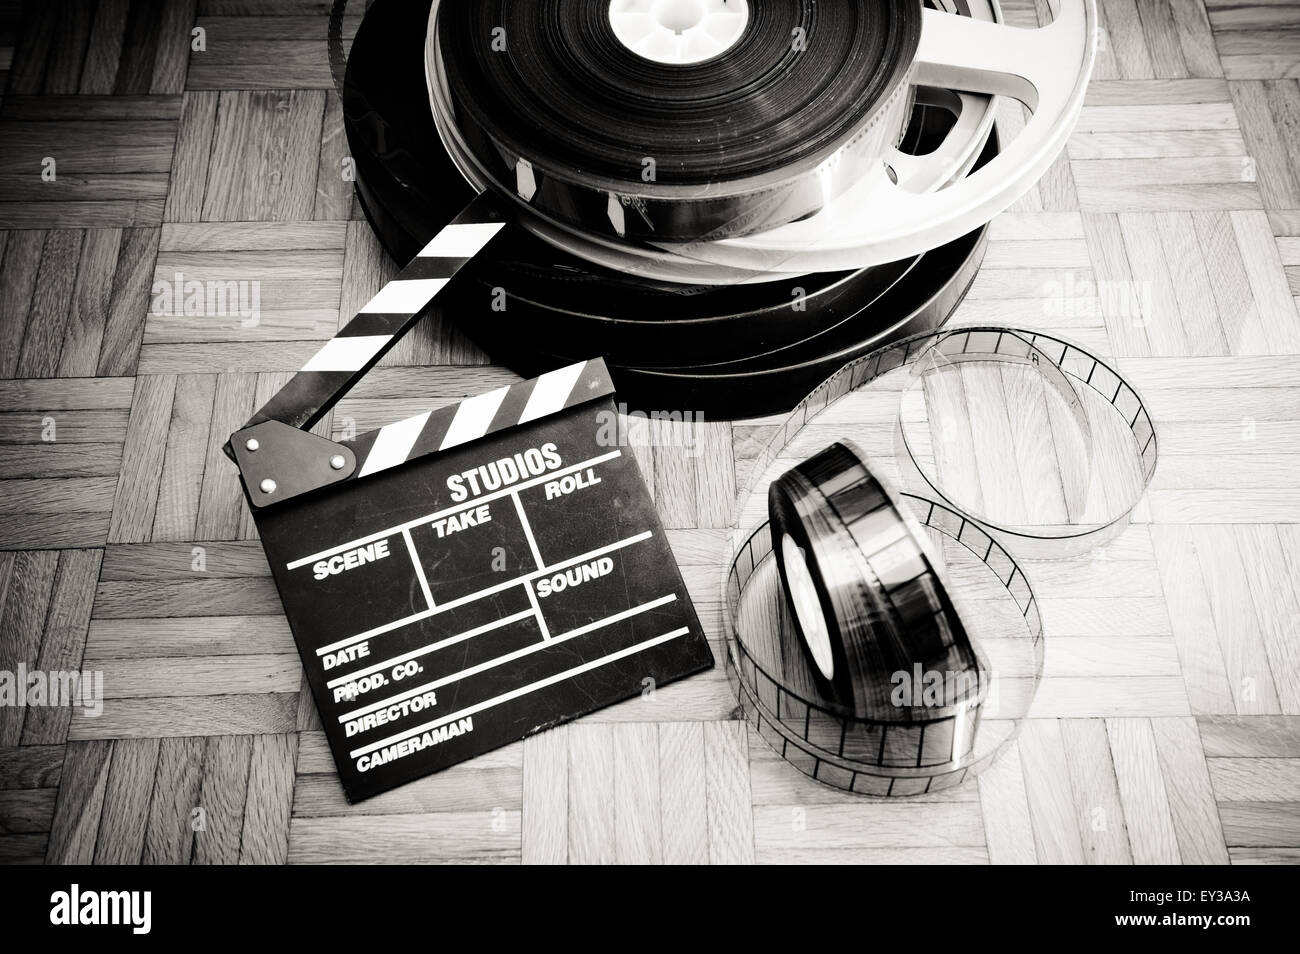 Film Cinema battaglio board e bobina di pellicola sul pavimento in legno vintage in bianco e nero Foto Stock